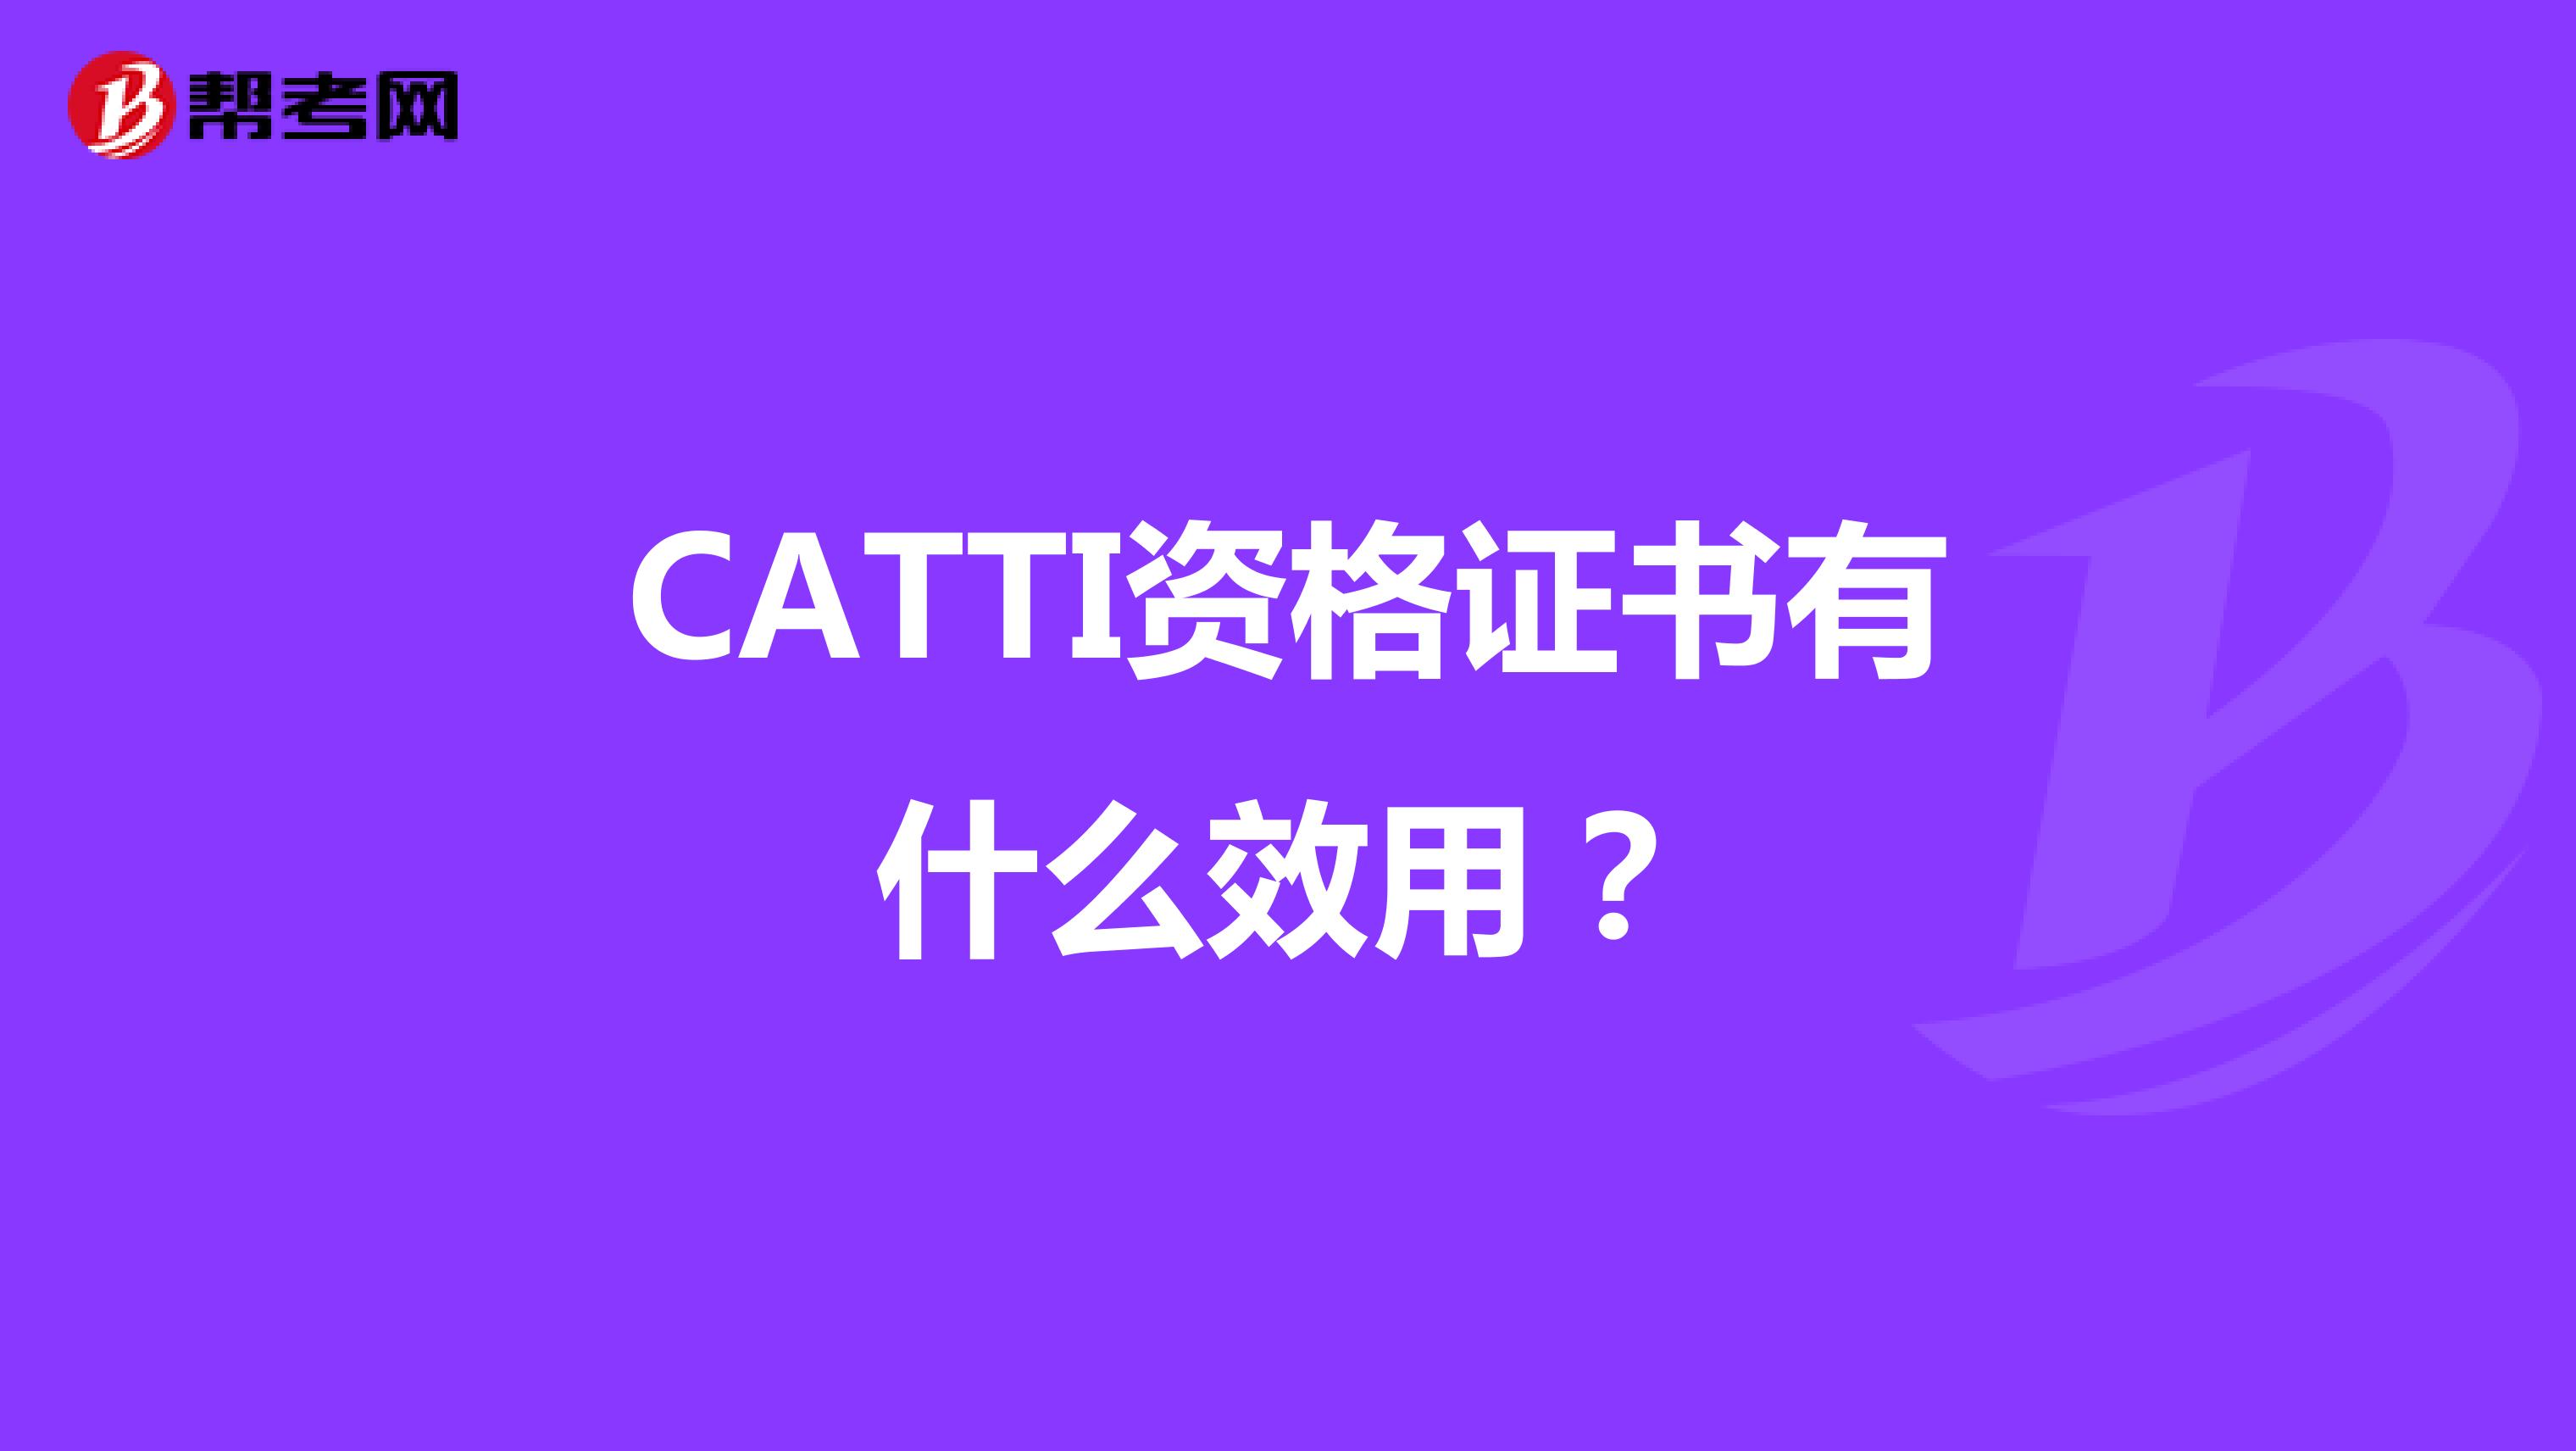 CATTI资格证书有什么效用？